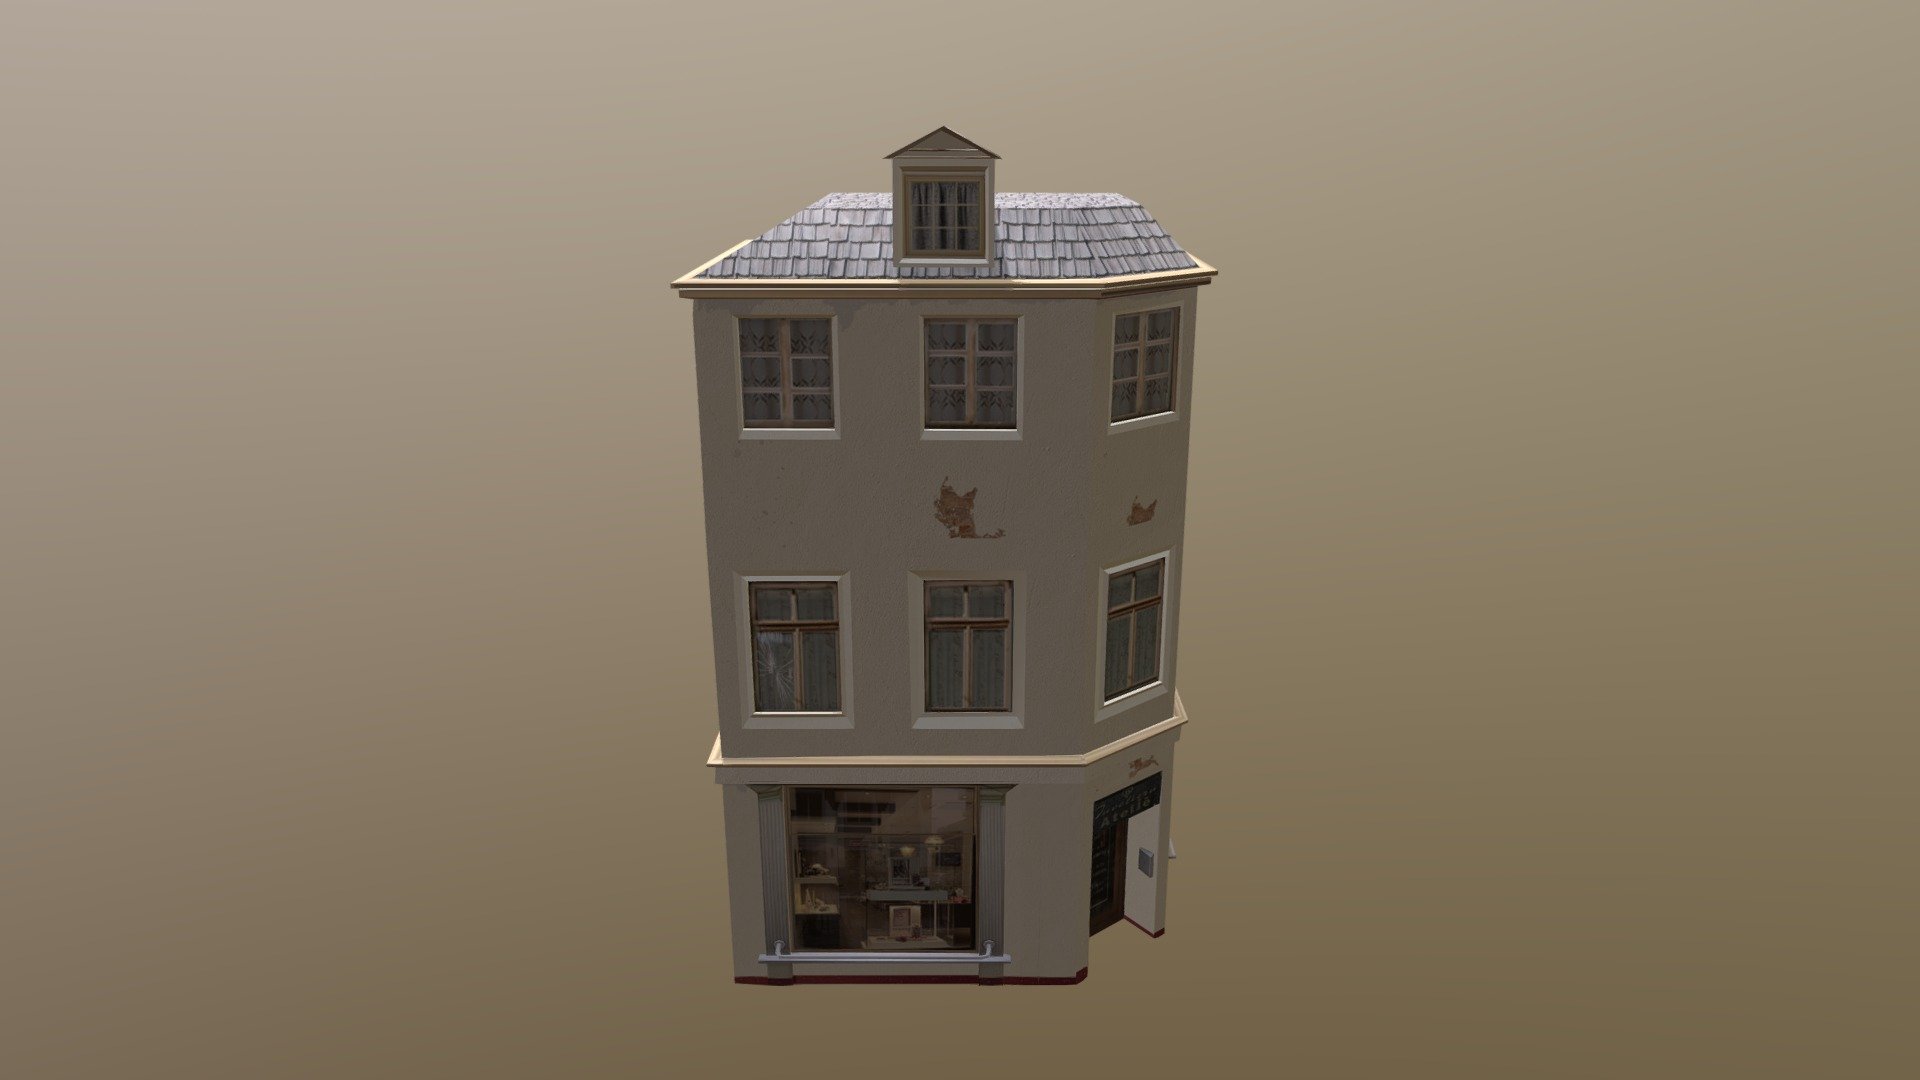 Jewelry shop_test - 3D model by Rani.Herman 3d model